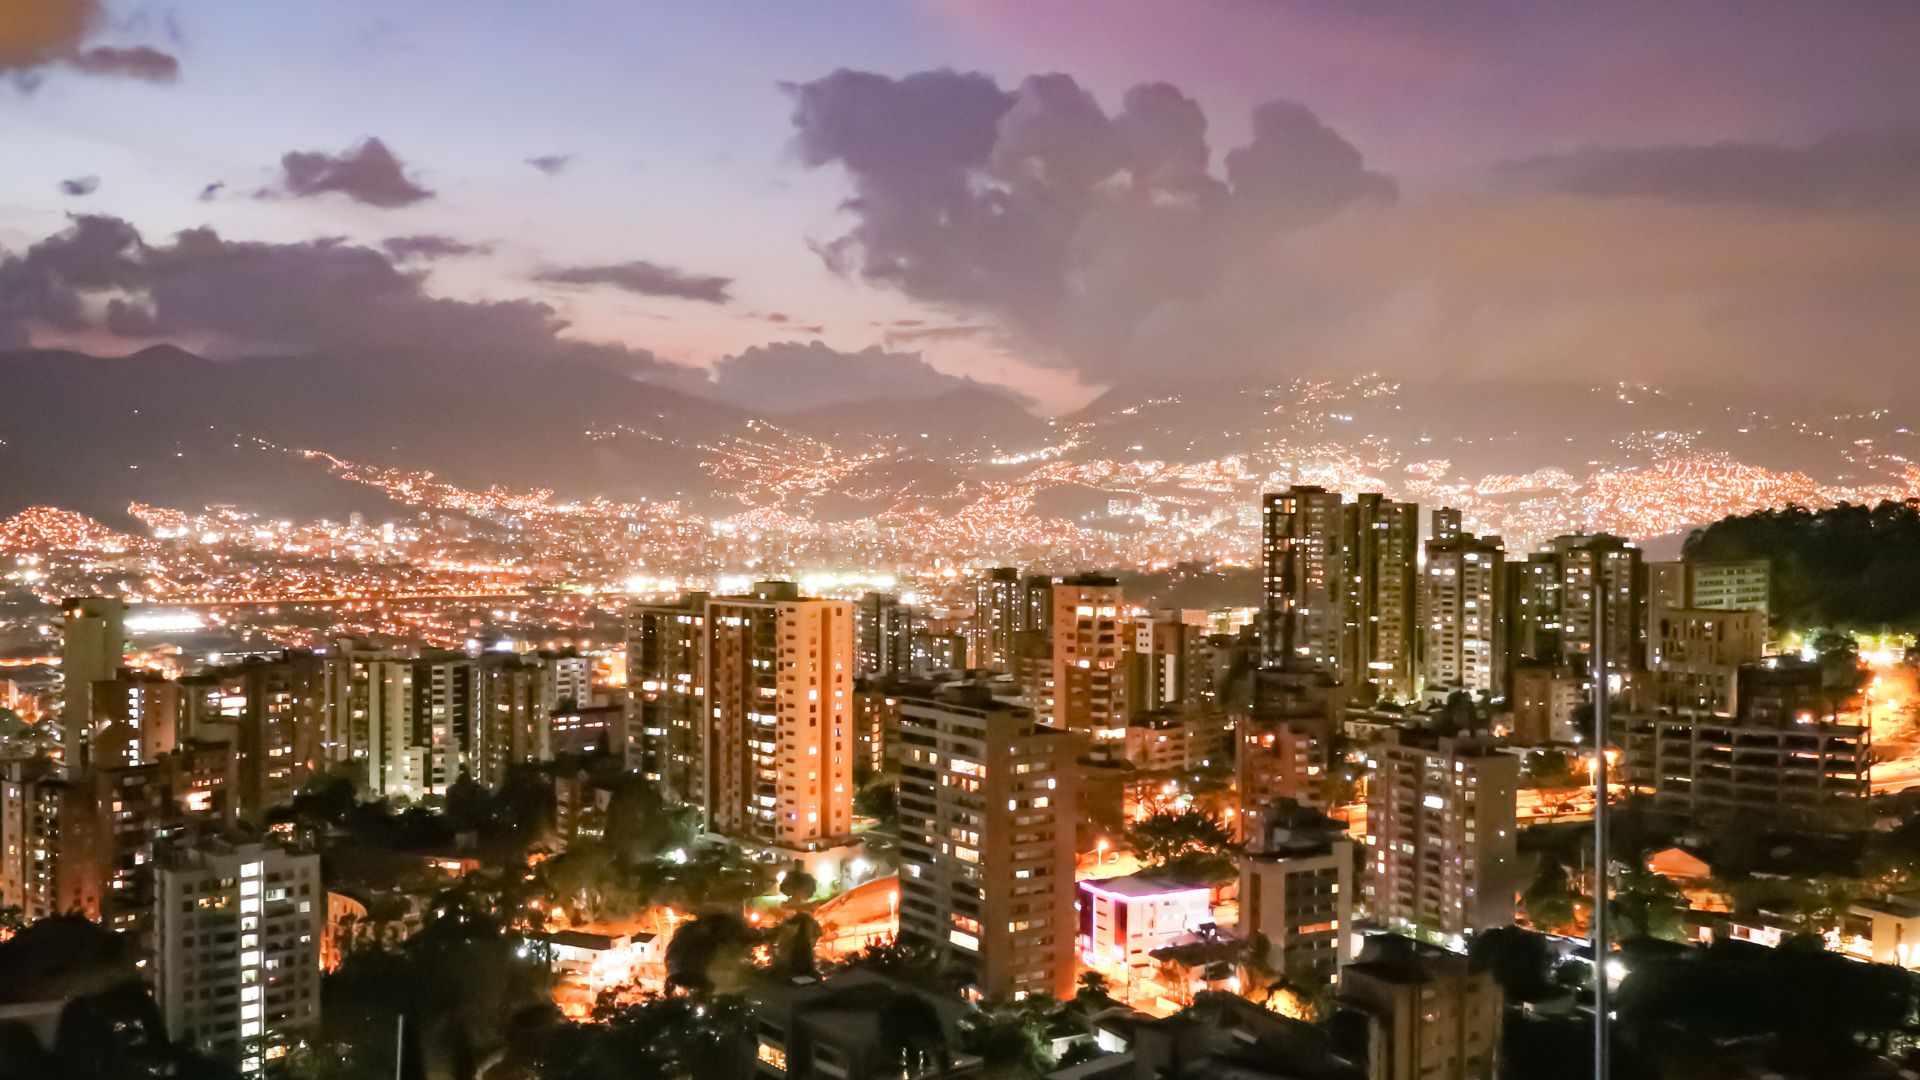 Ciudad colombiana entre los mejores lugares del mundo para visitar, según TIME